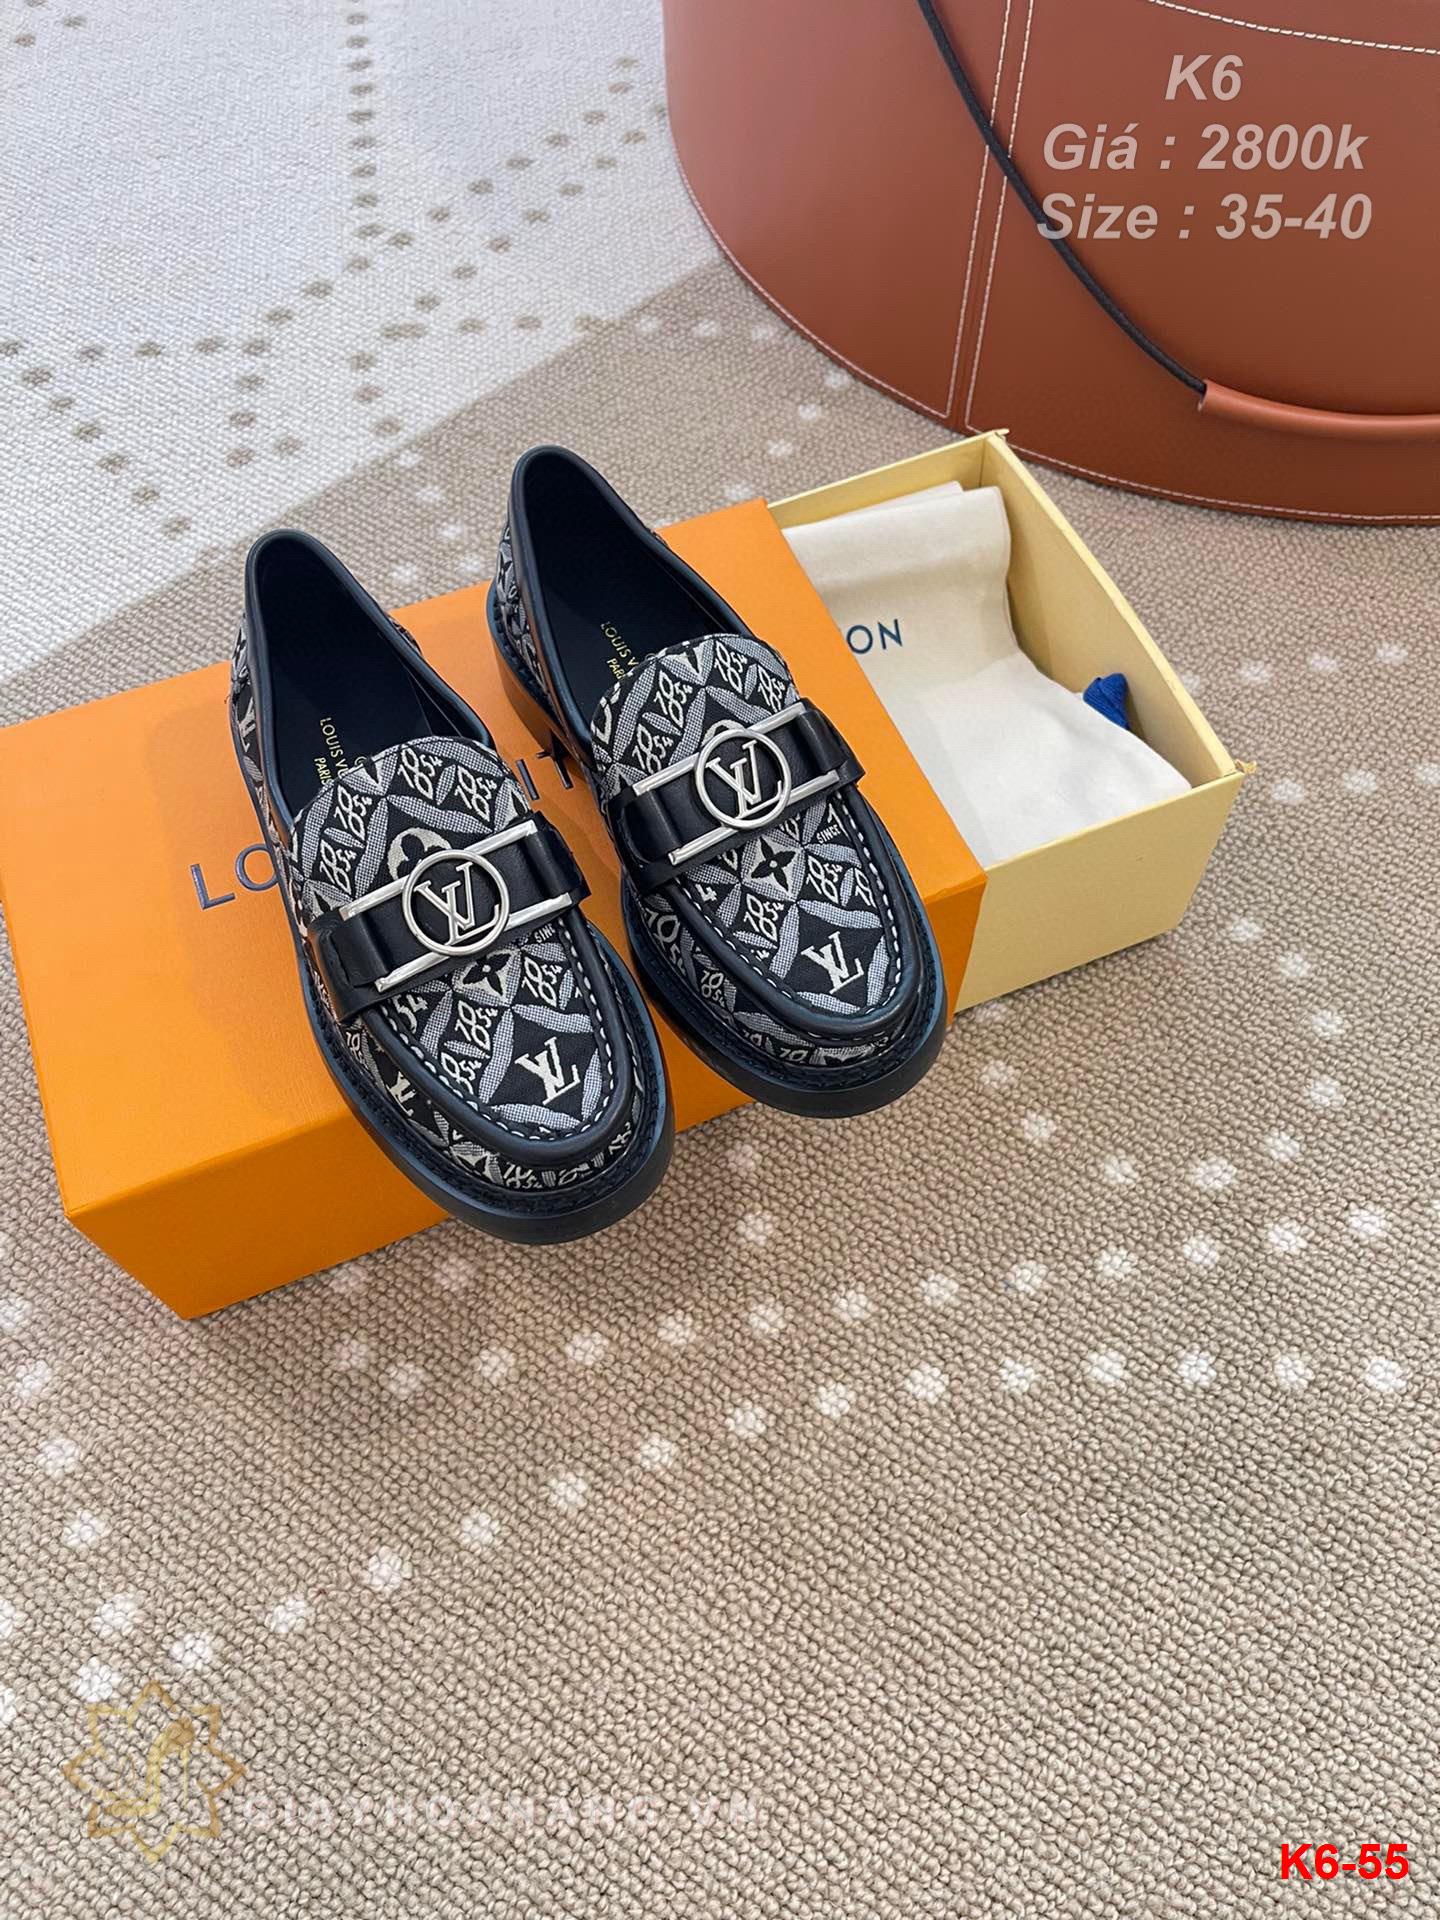 K6-55 Louis Vuitton giày lười siêu cấp